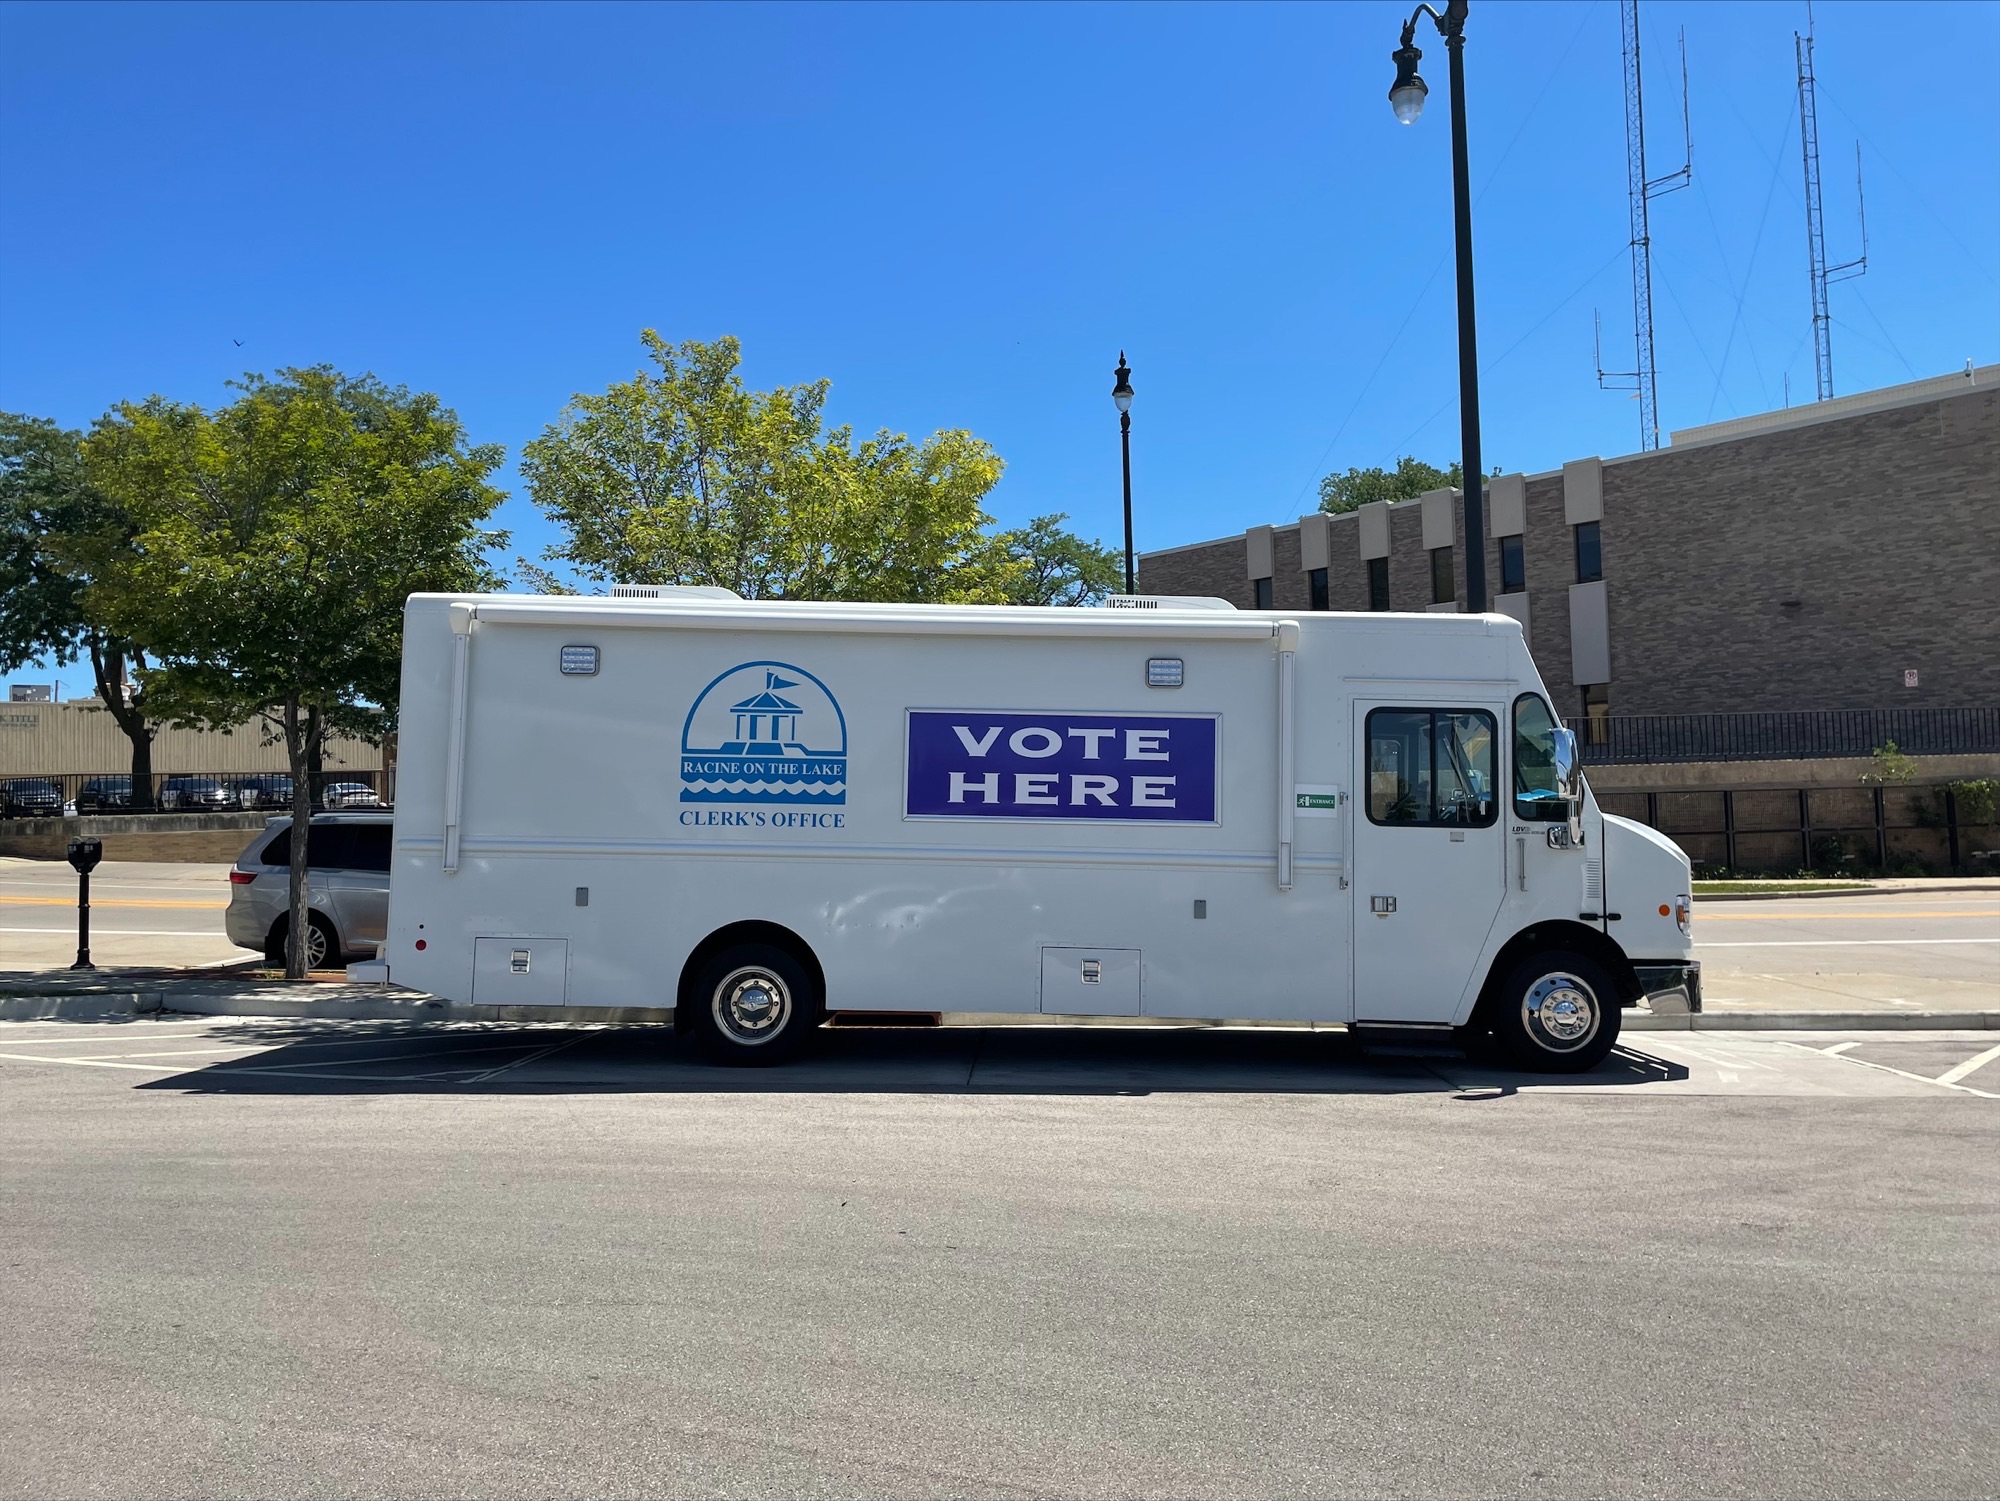 Judge rules early voting van used in Racine was illegal